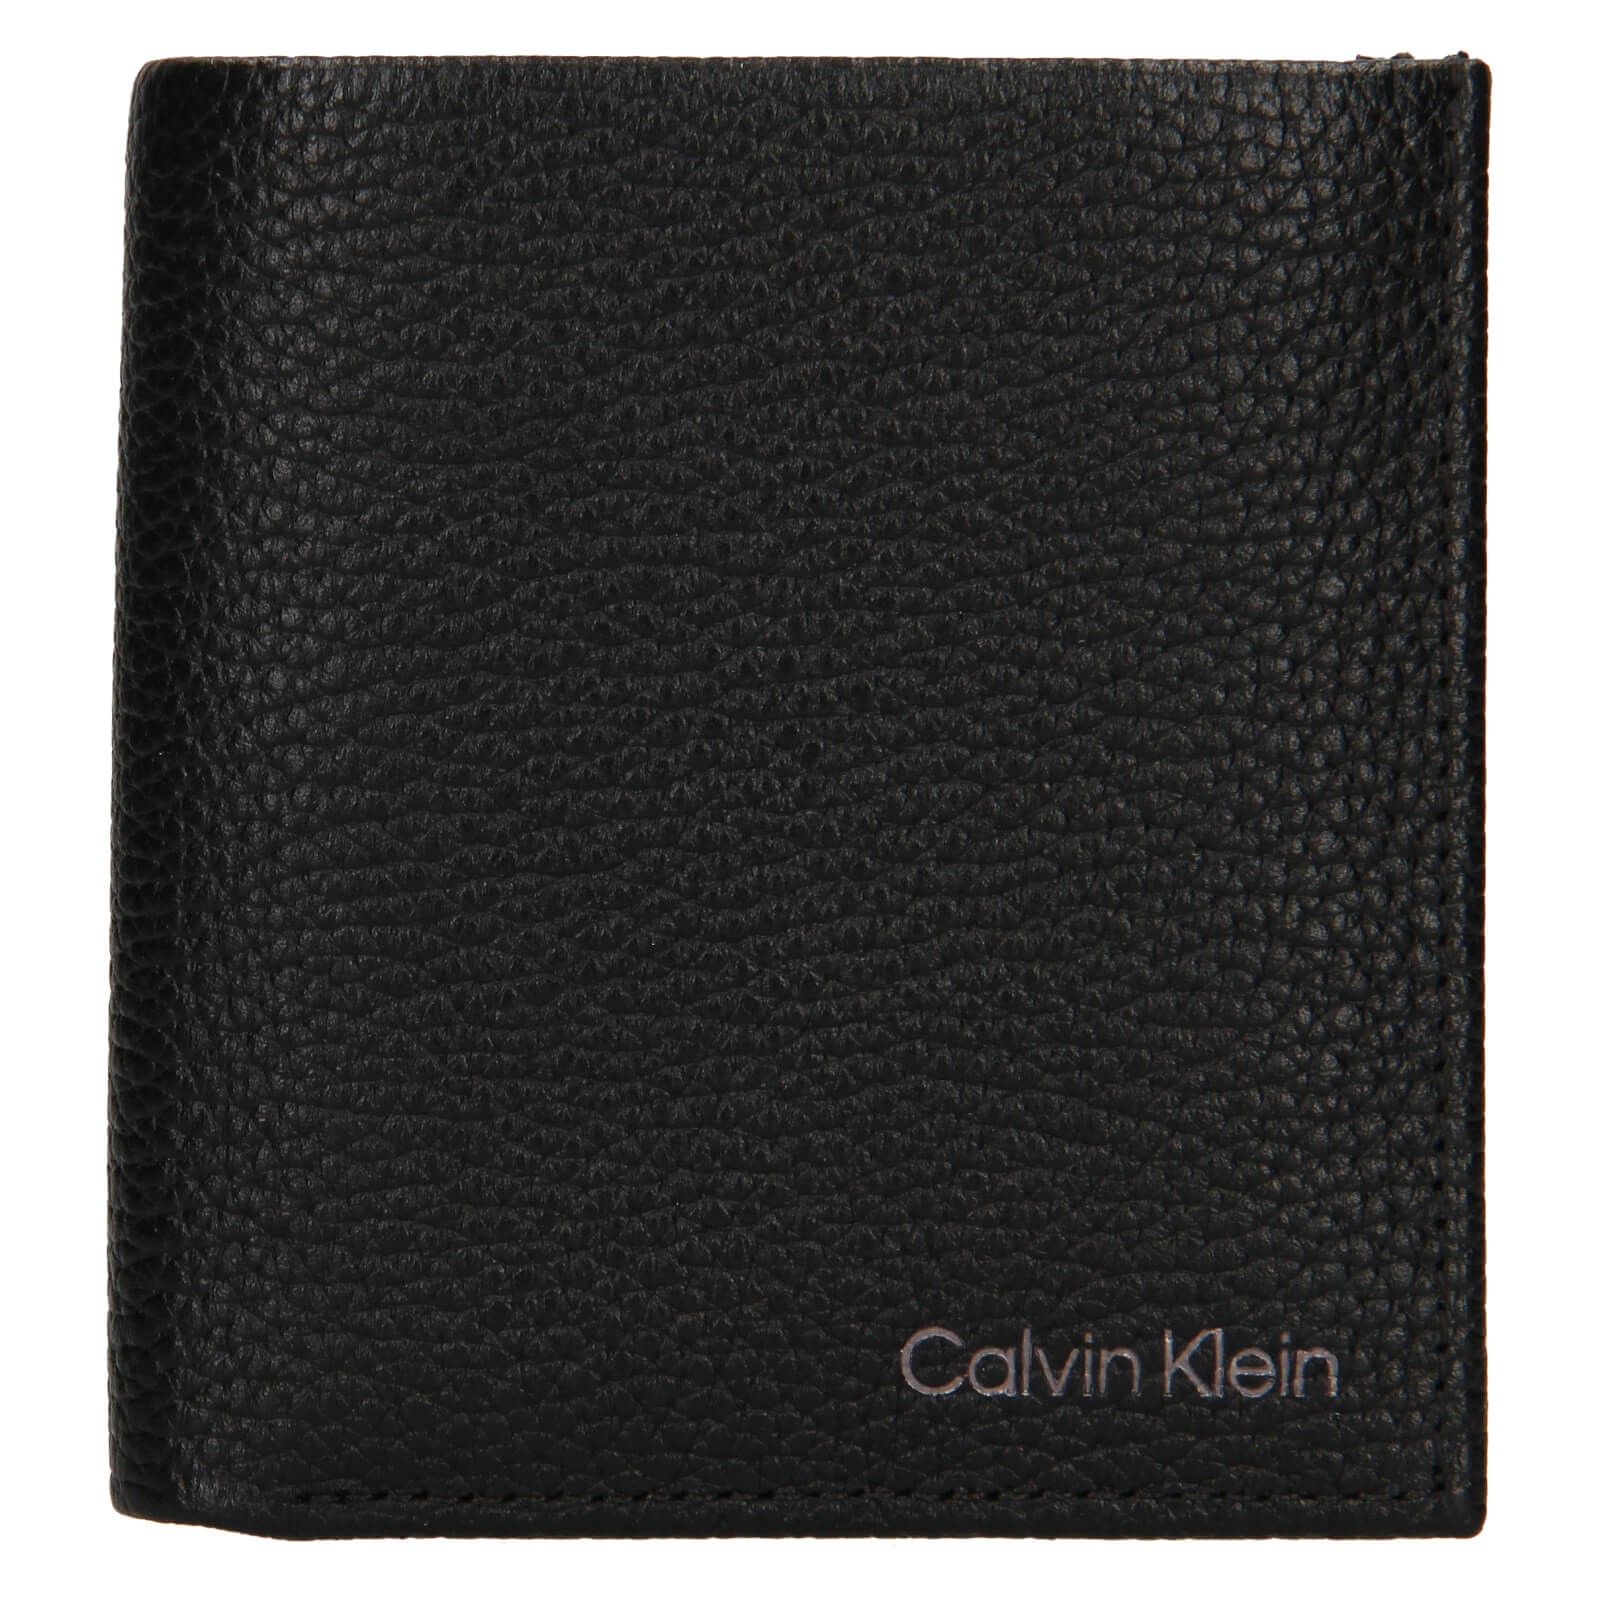 Pánska kožená peňaženka Calvin Klein Mano - čierna.